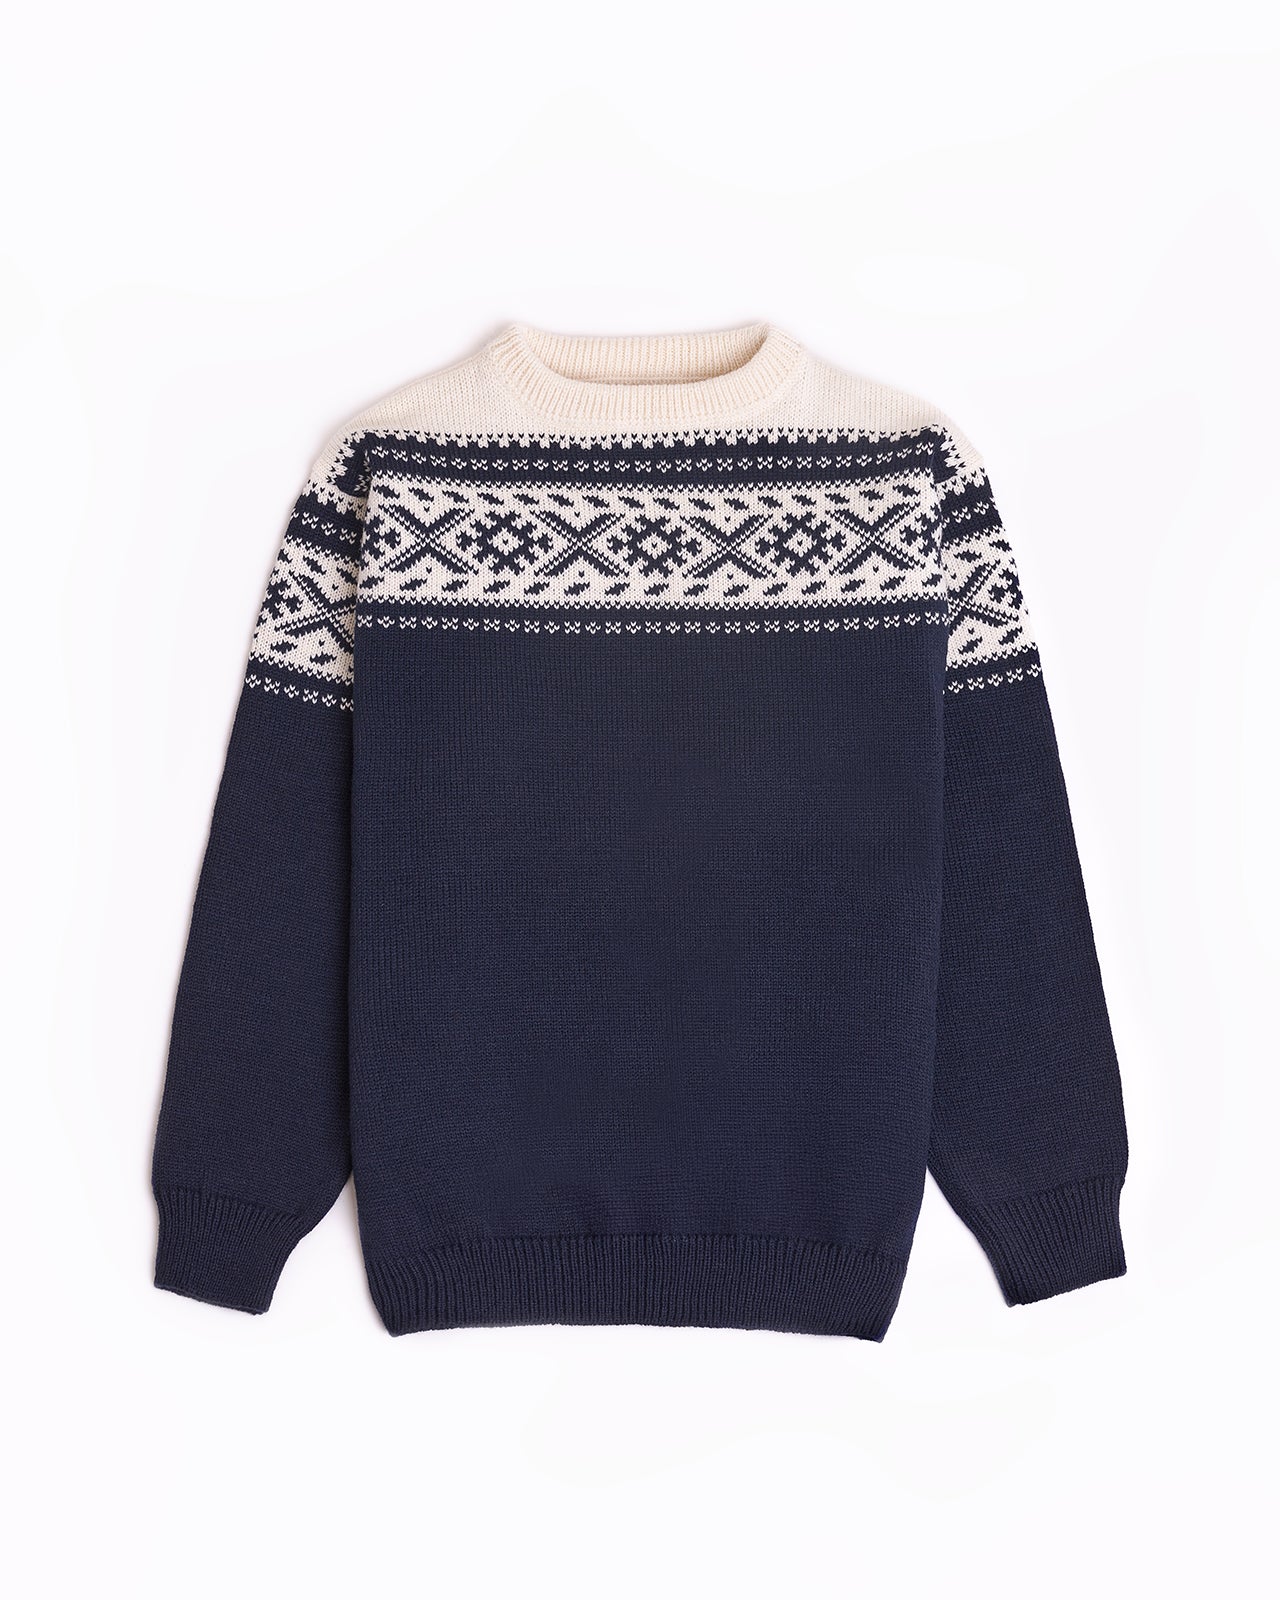 Olav men's round neck sweater